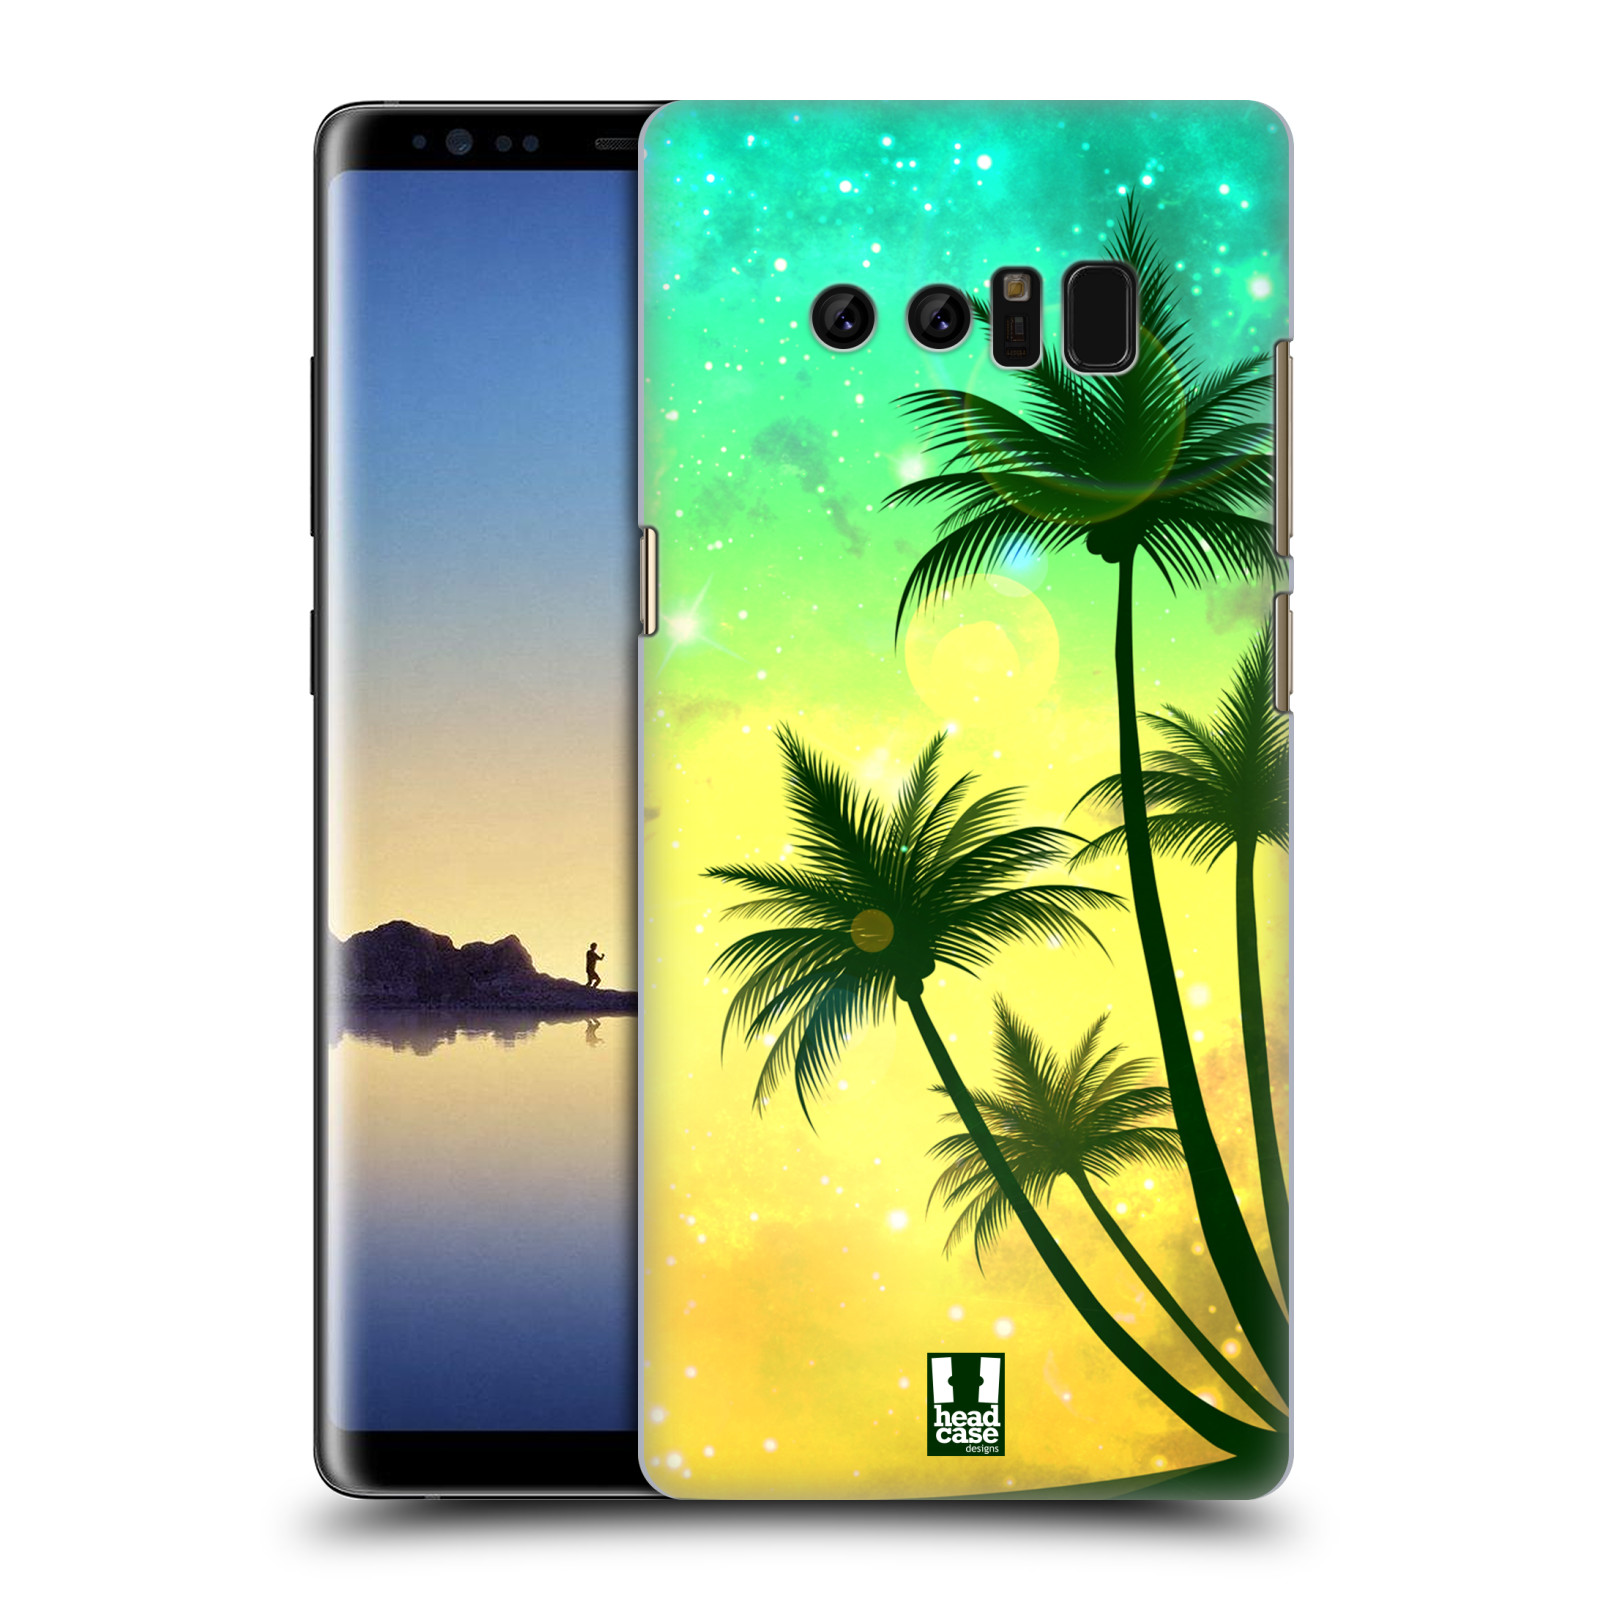 HEAD CASE plastový obal na mobil Samsung Galaxy Note 8 vzor Kreslený motiv silueta moře a palmy TYRKYSOVÁ